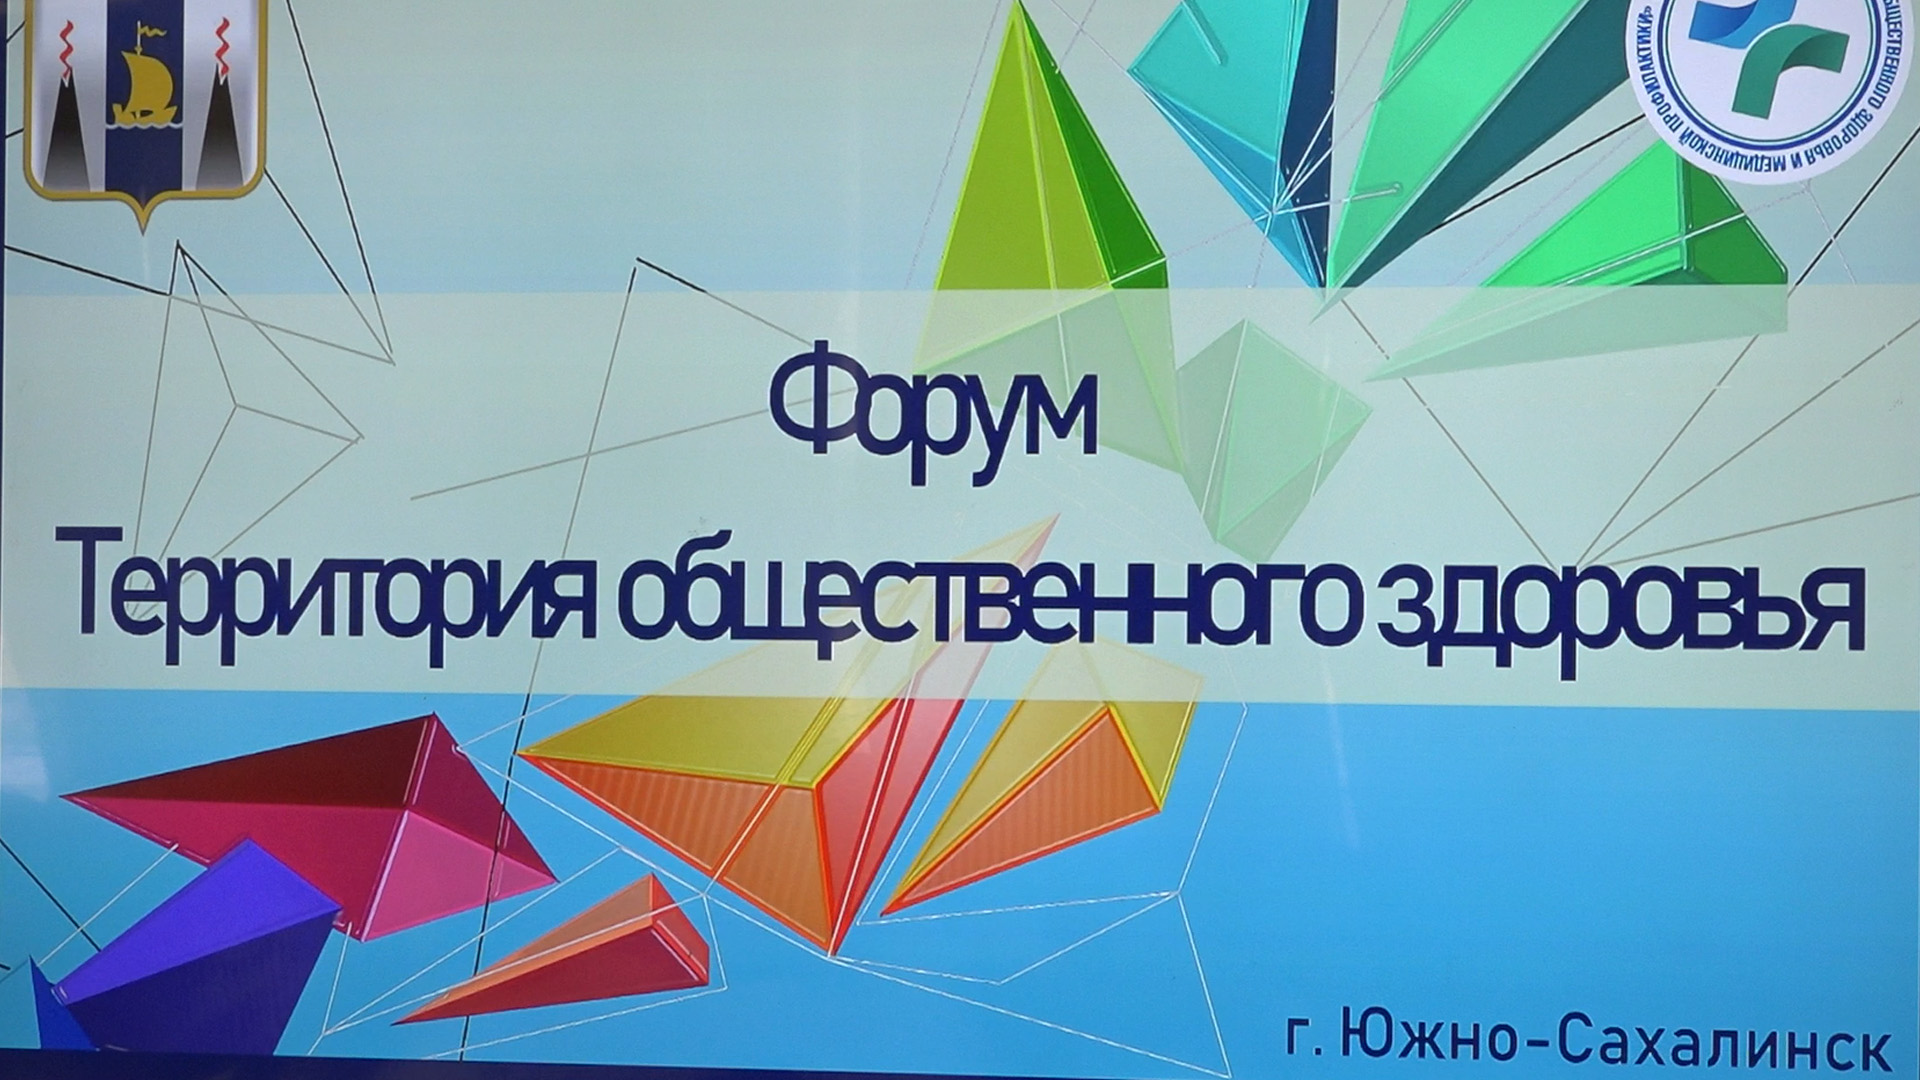 Территория общественного здоровья. Форум для волонтеров состоялся в Южно-Сахалинске